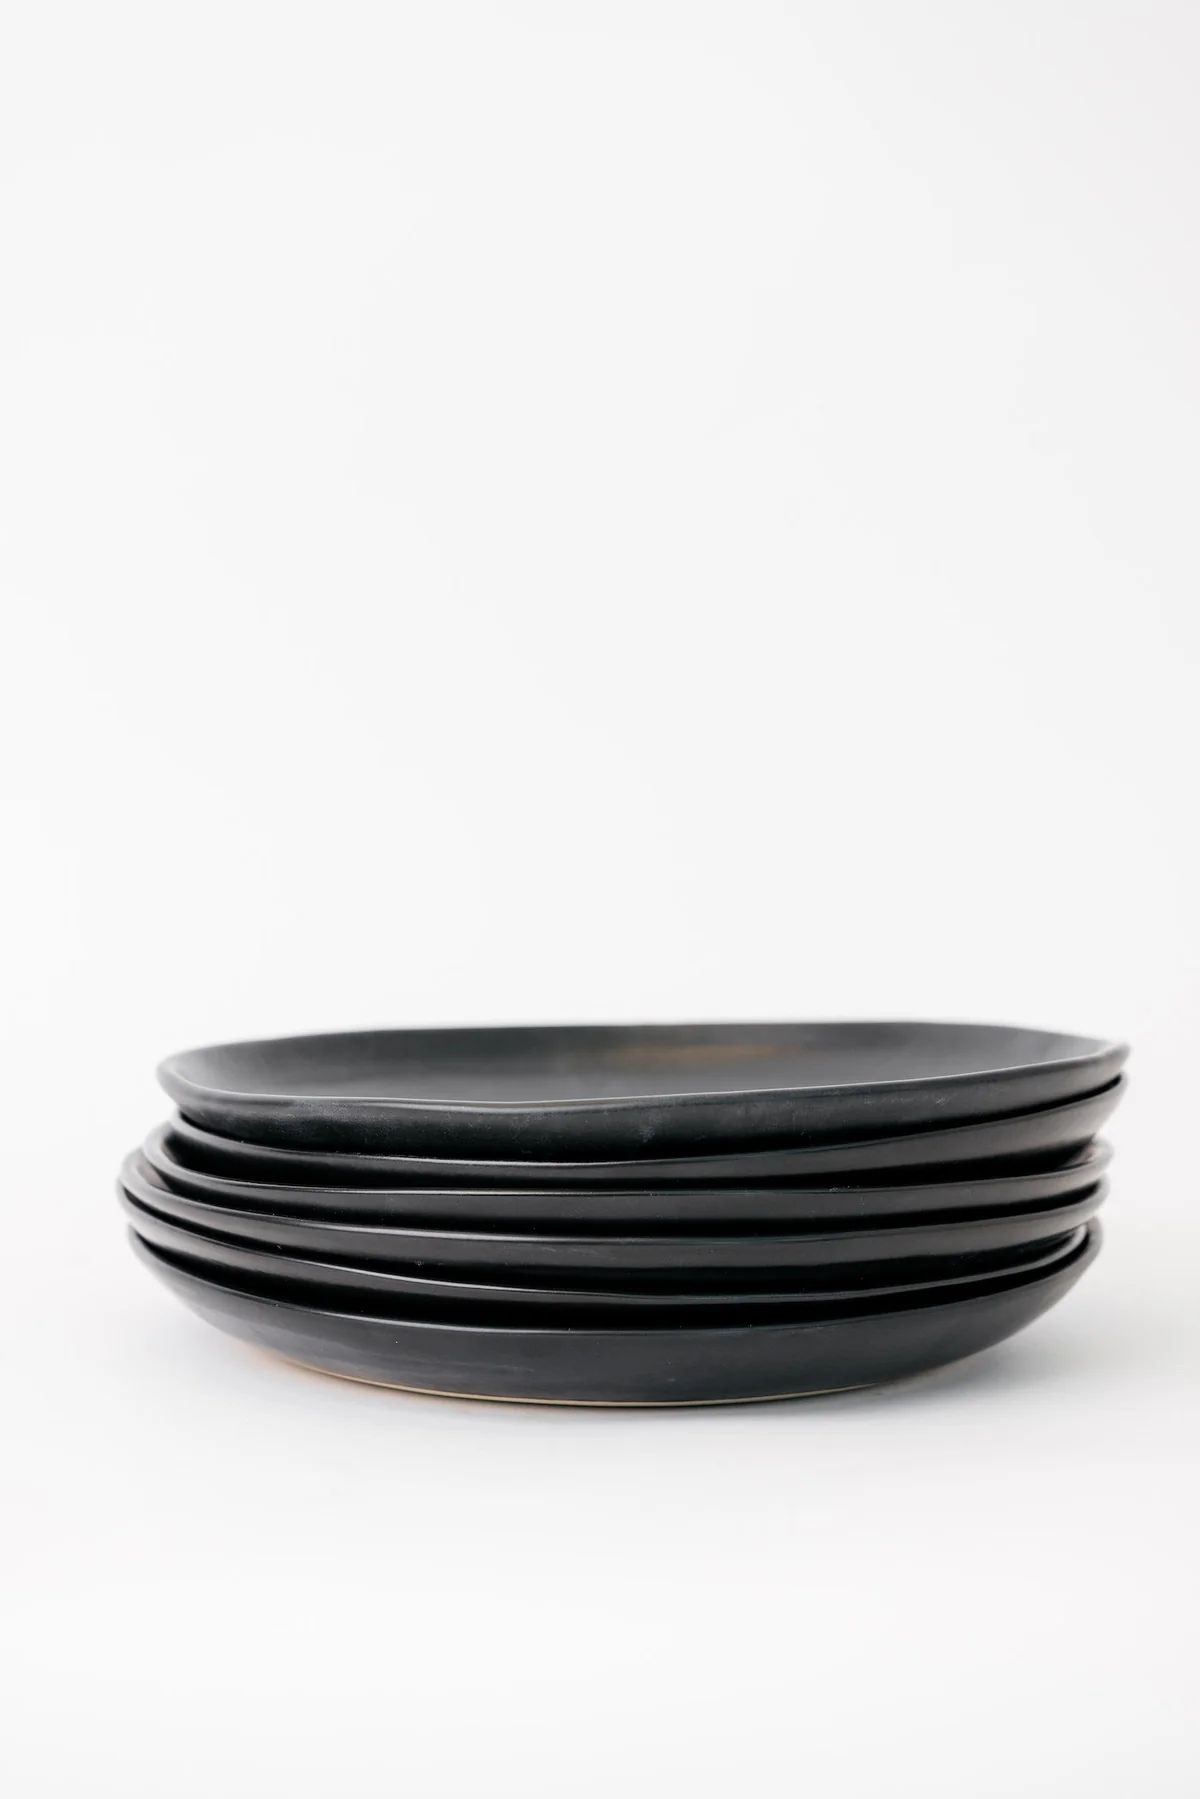 Dusk Dinner Plate - Matte Black - Set of 6 | THELIFESTYLEDCO